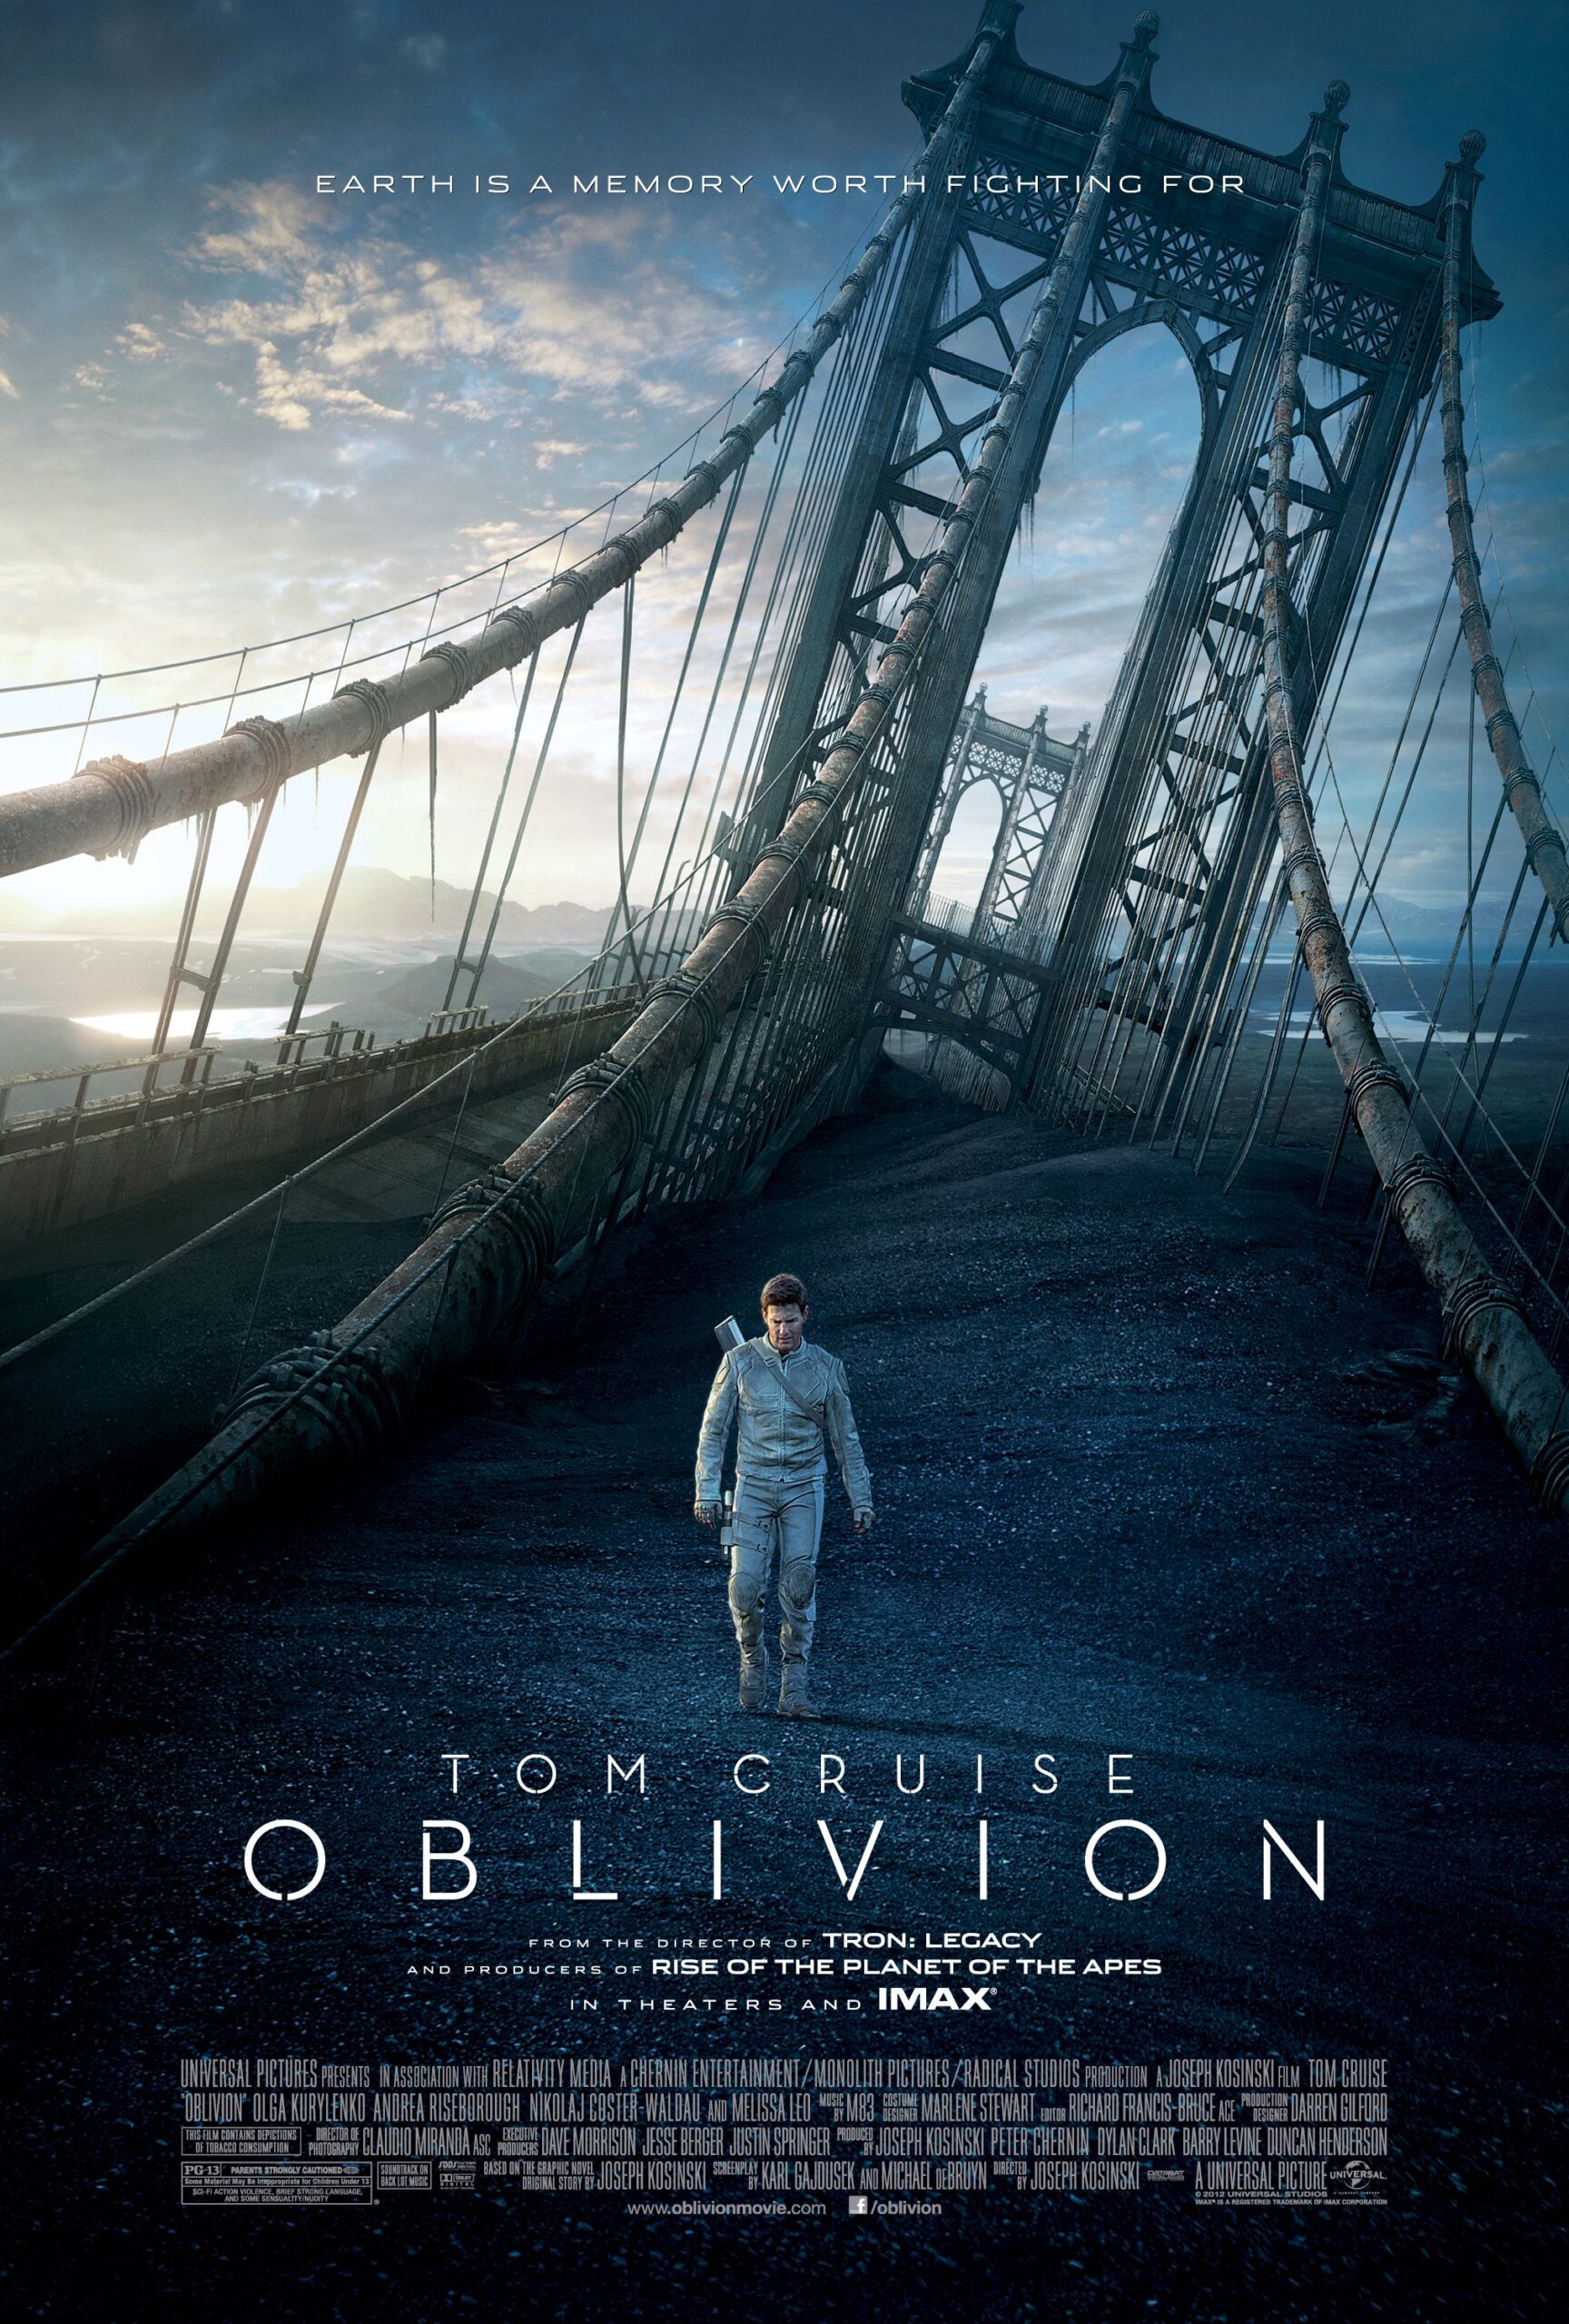 Oblivion (2013) ★★★☆☆